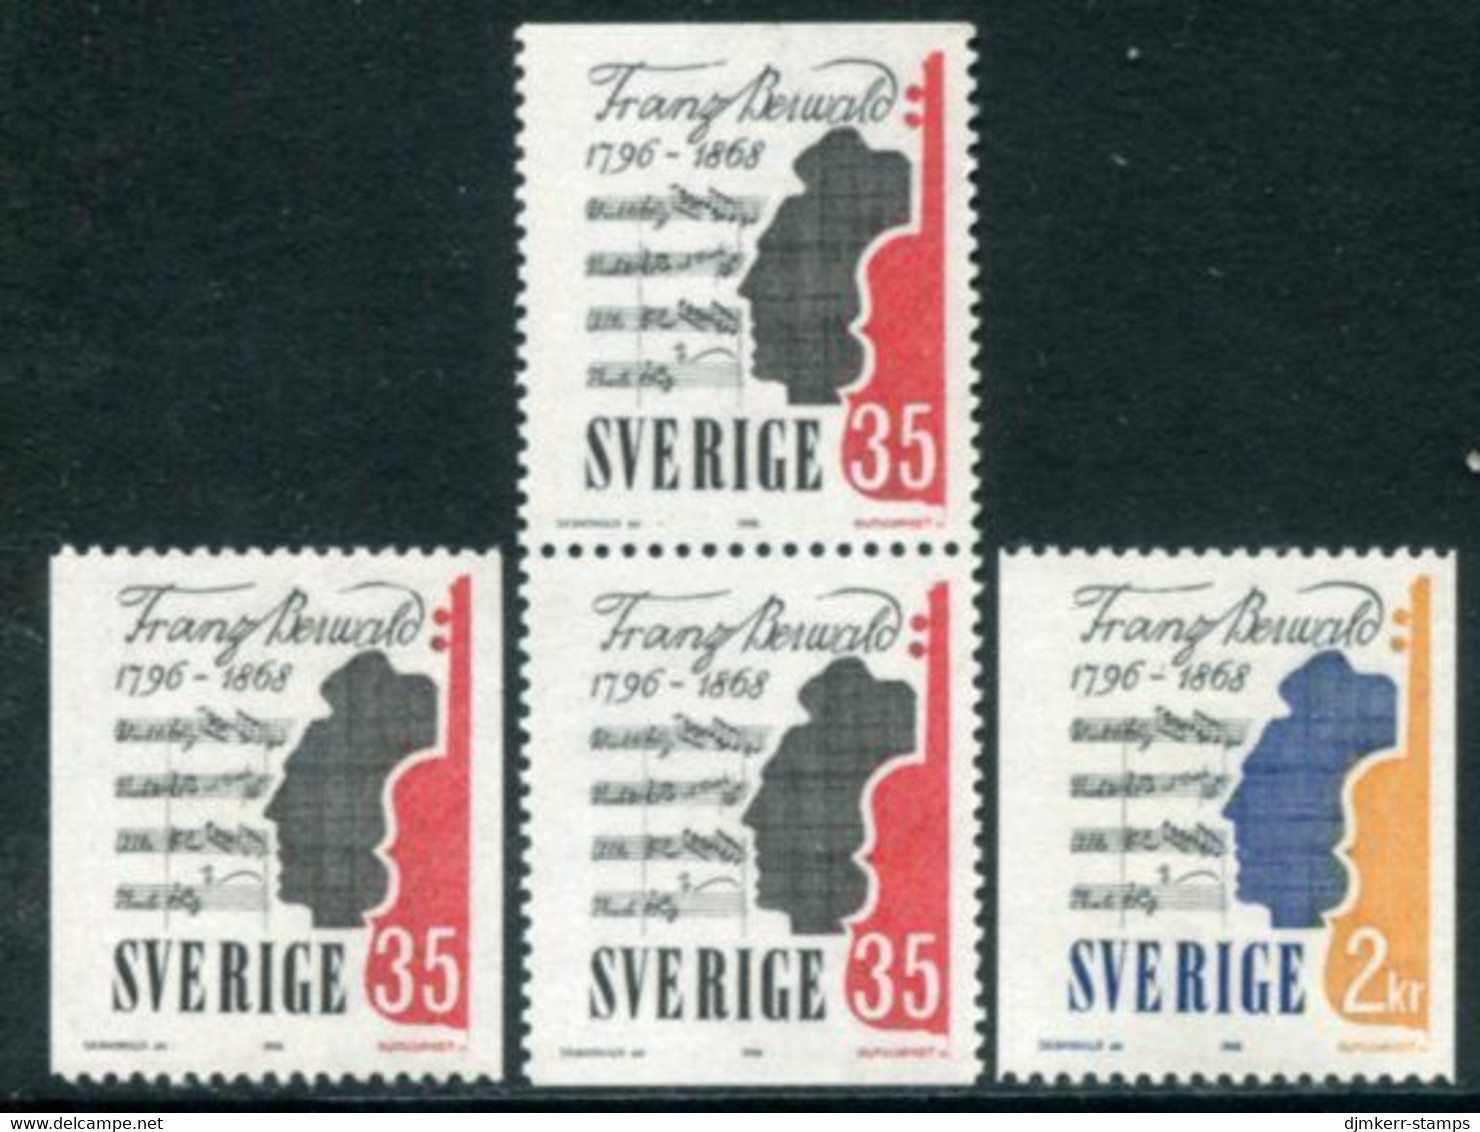 SWEDEN 1968 Berwald Death Centenary MNH / **.  Michel 601-02 - Neufs